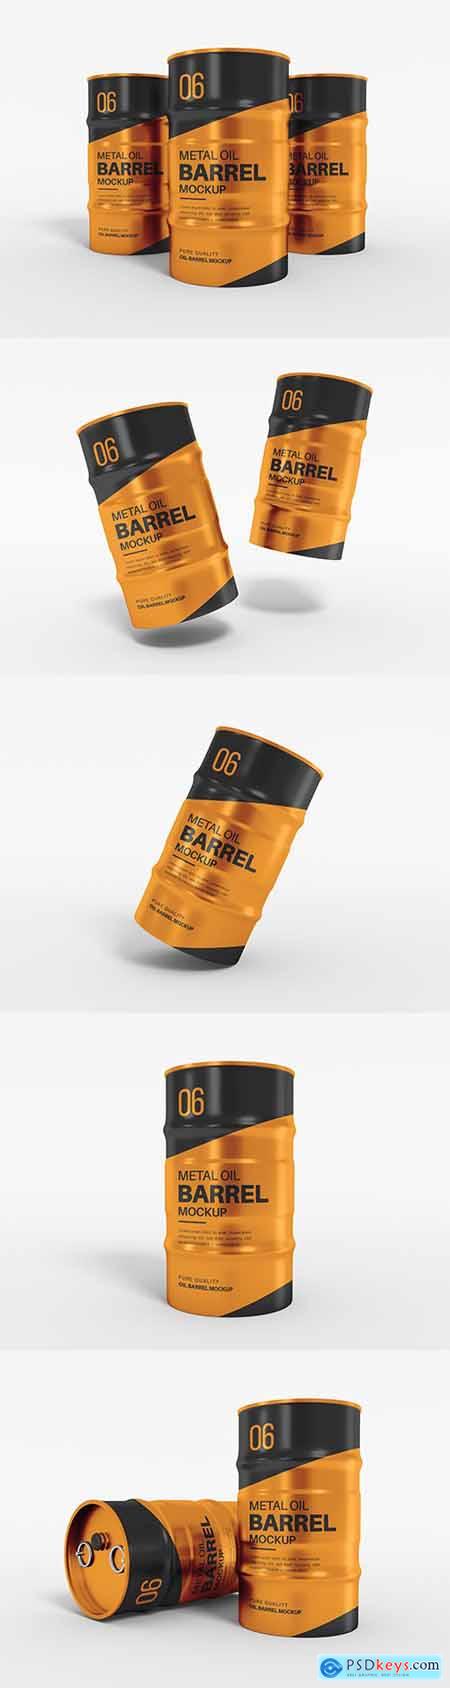 Metal oil barrel drum packaging mockup